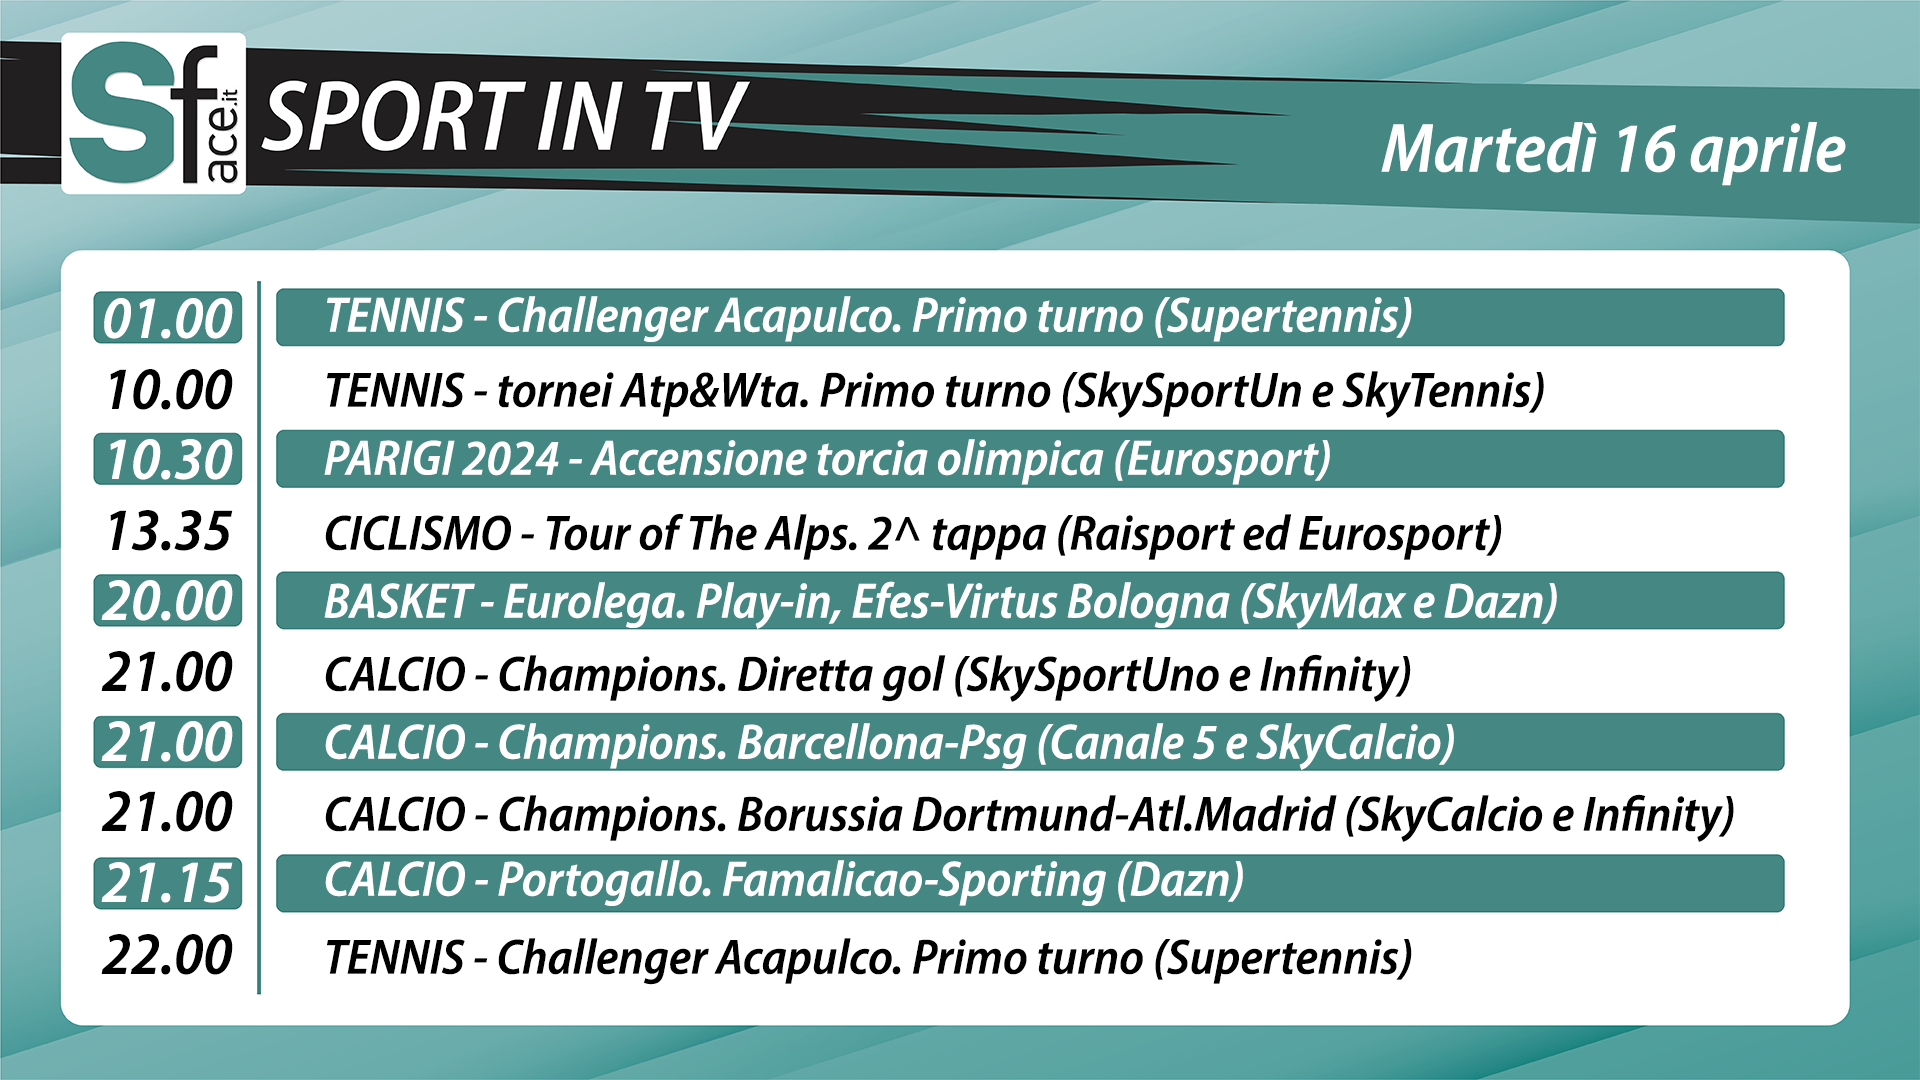 Sport in tv oggi martedì 16 aprile: programma e orari di tutti gli eventi